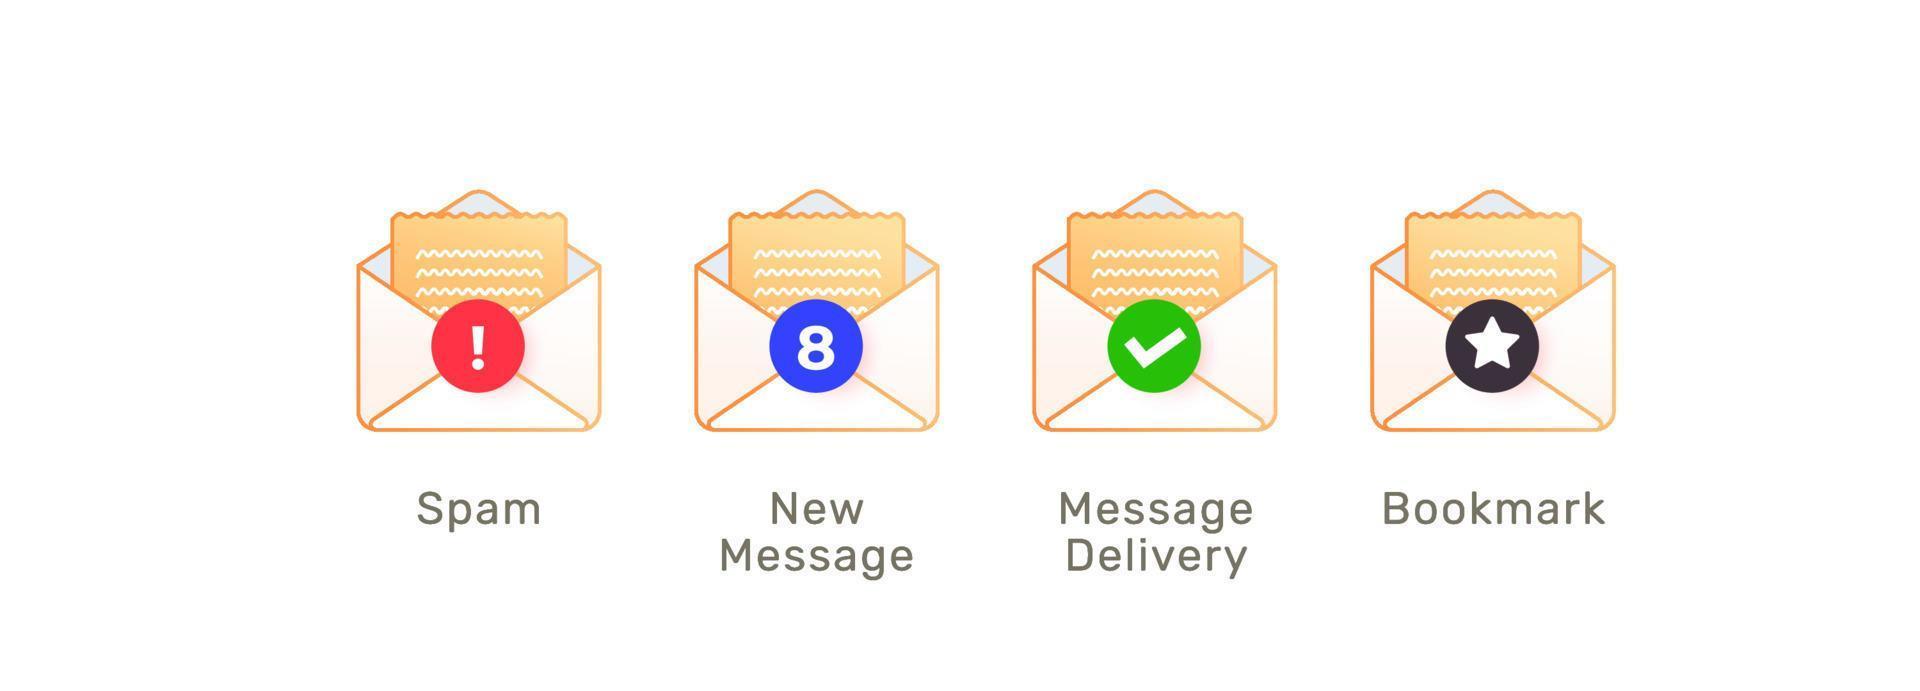 newsletter e-mail message commercial entreprise courrier spam s'abonner vecteur